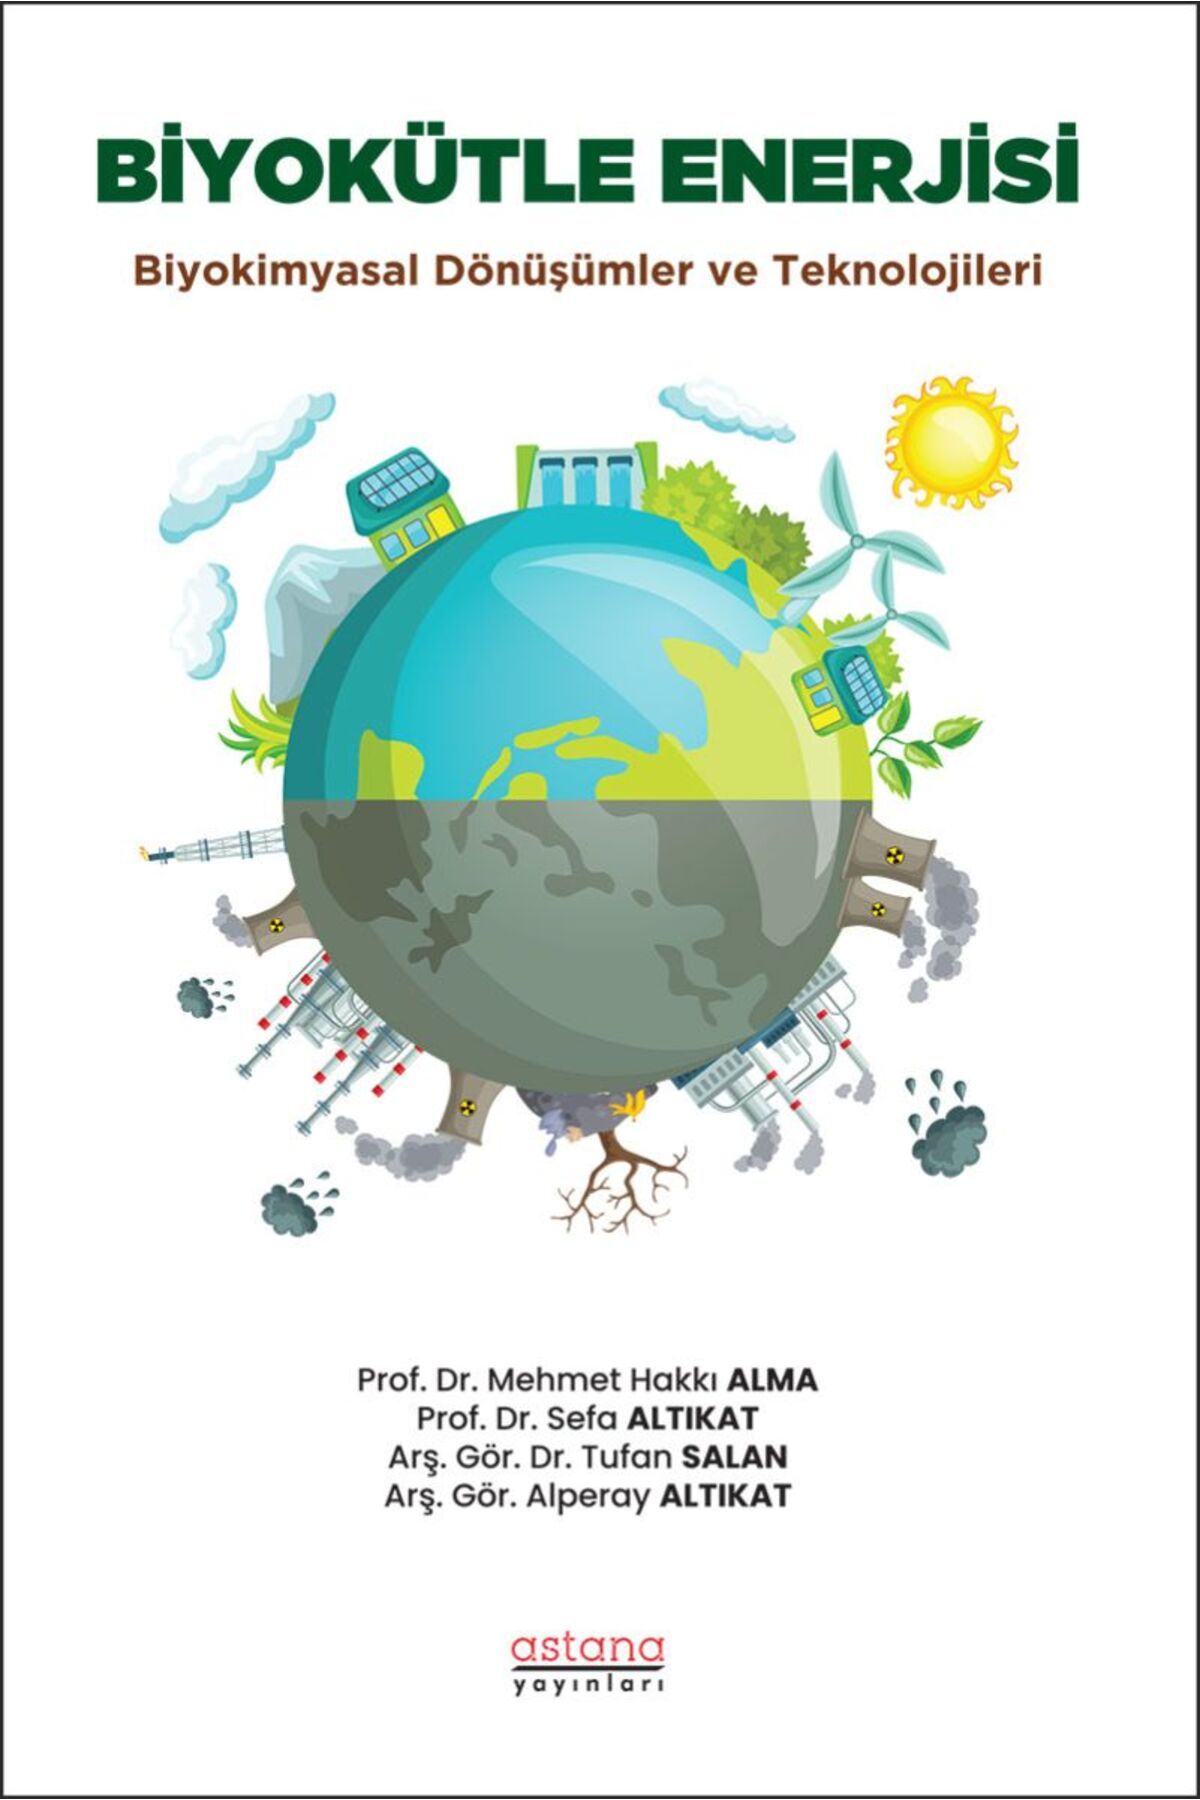 Astana Yayınları Biyokütle Enerjisi: Biyokimyasal Dönüşümler ve Teknolojileri